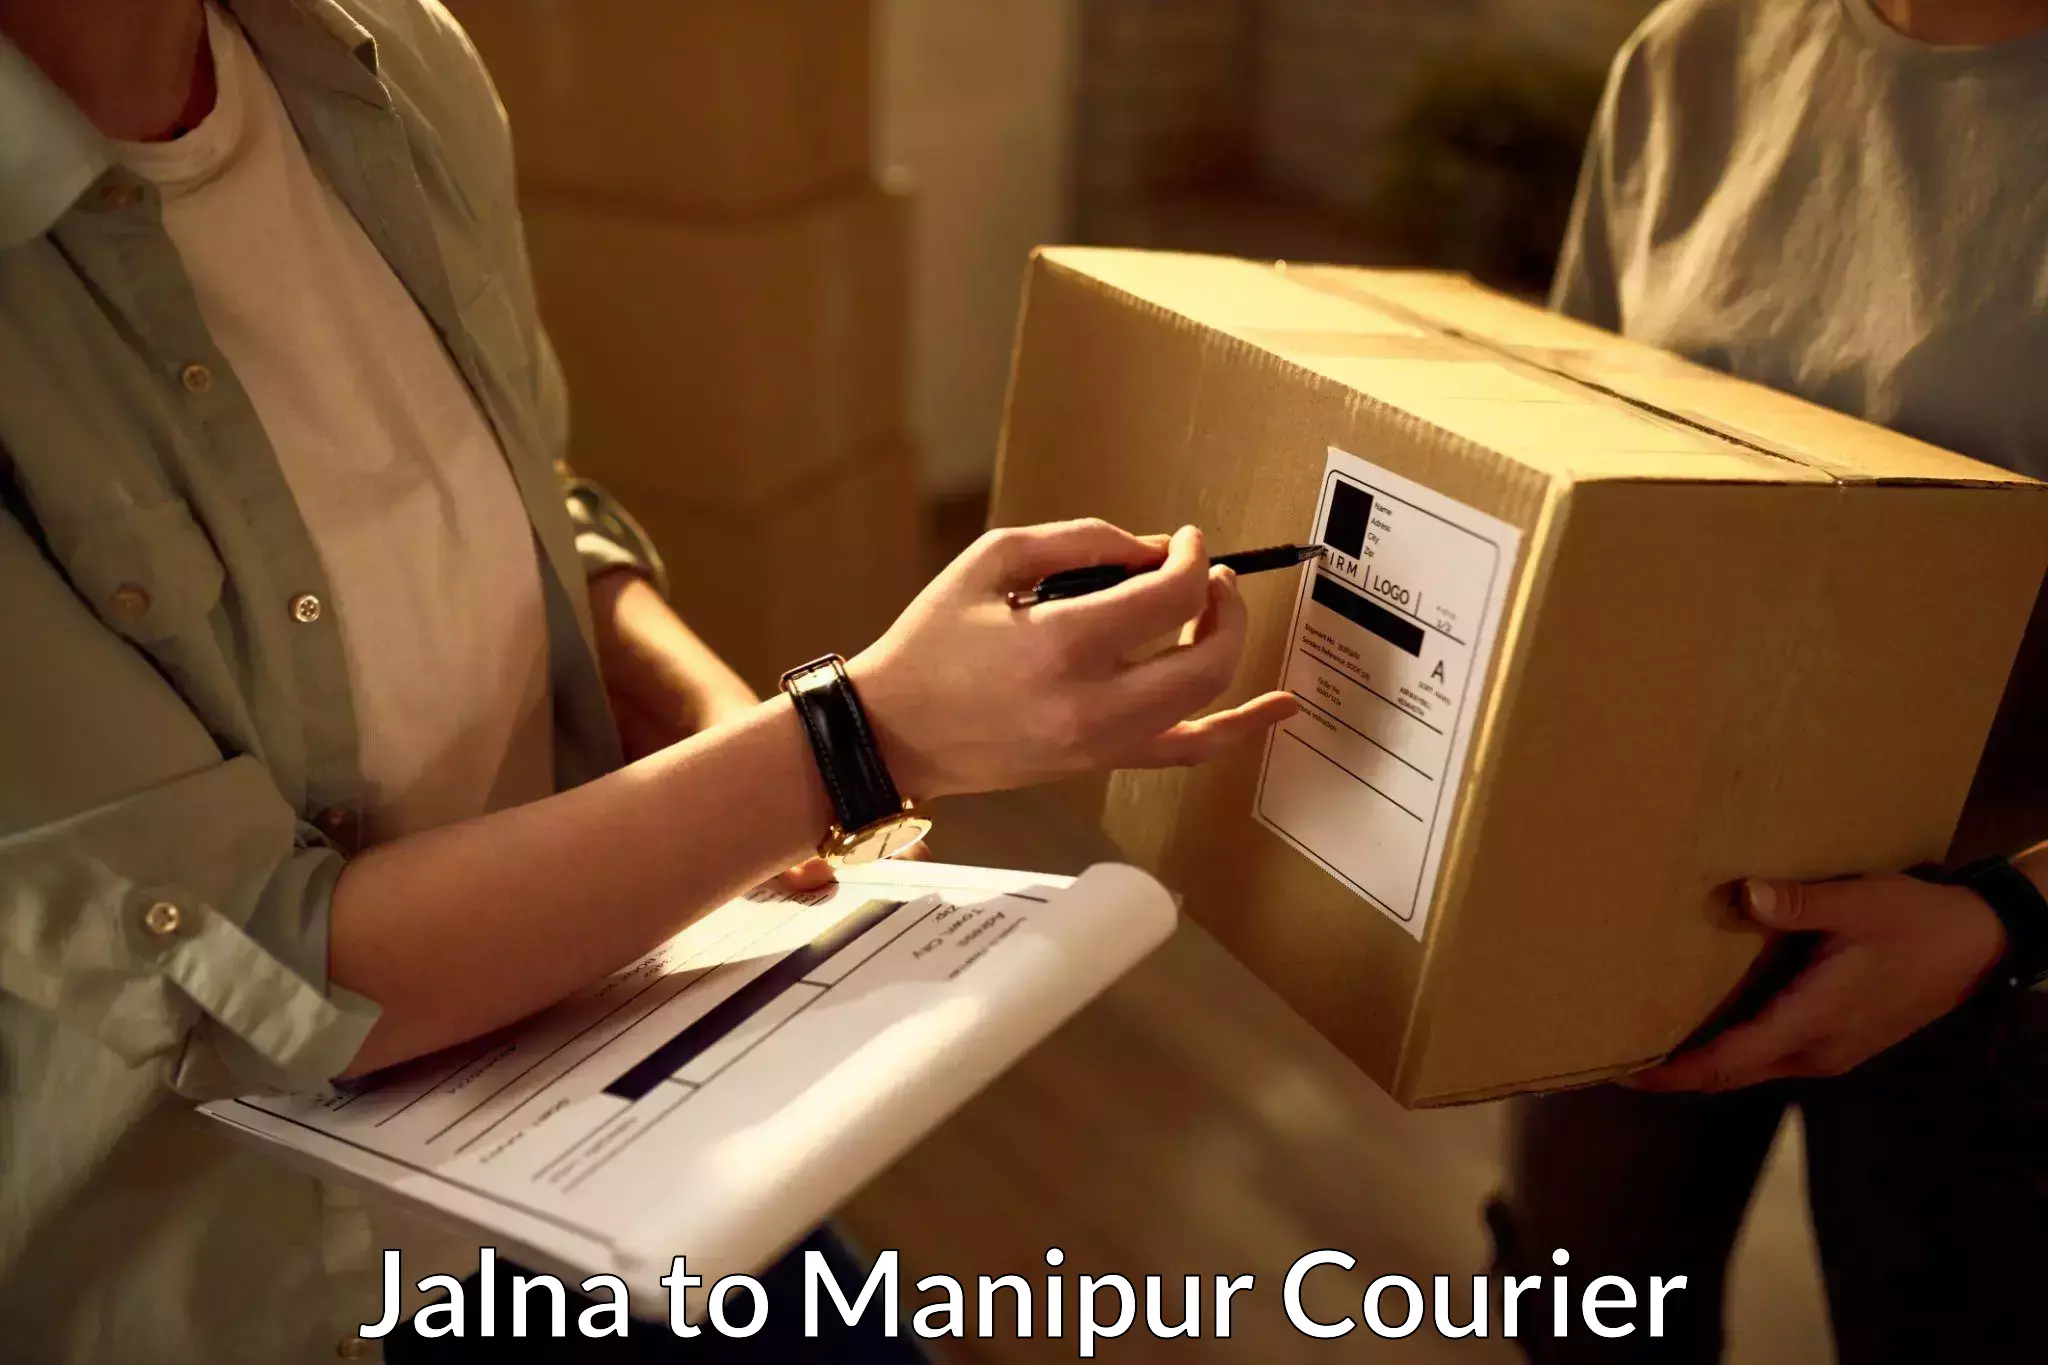 Cash on delivery service Jalna to Jiribam